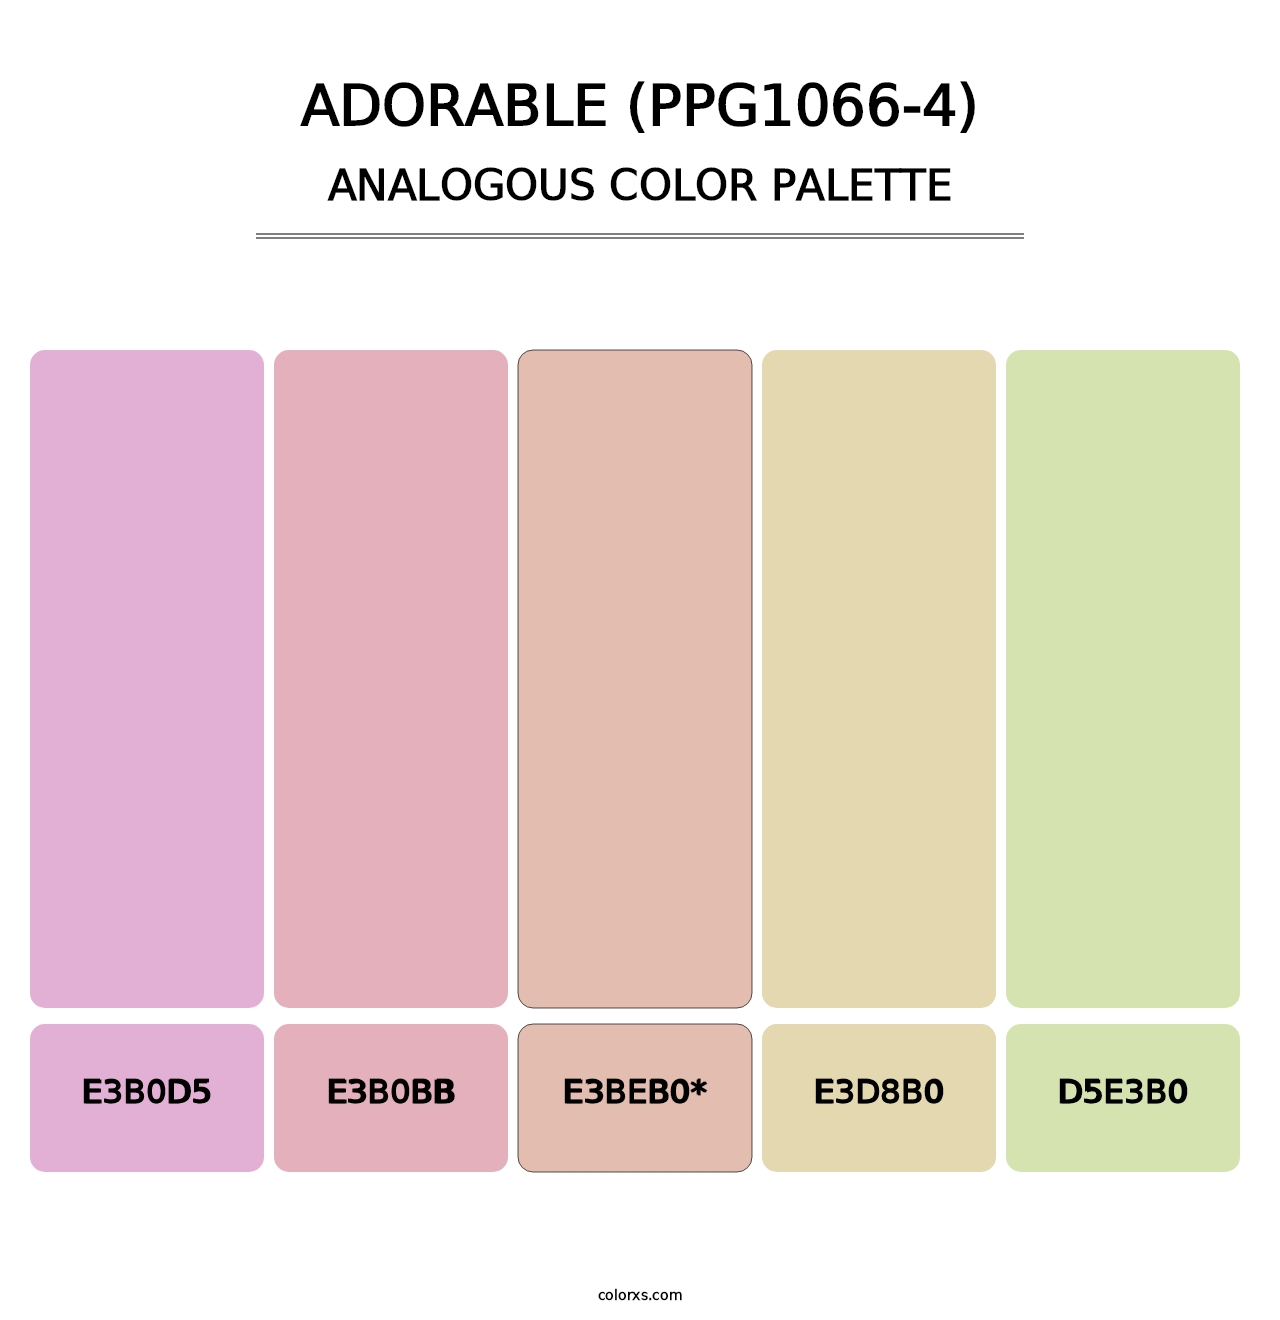 Adorable (PPG1066-4) - Analogous Color Palette